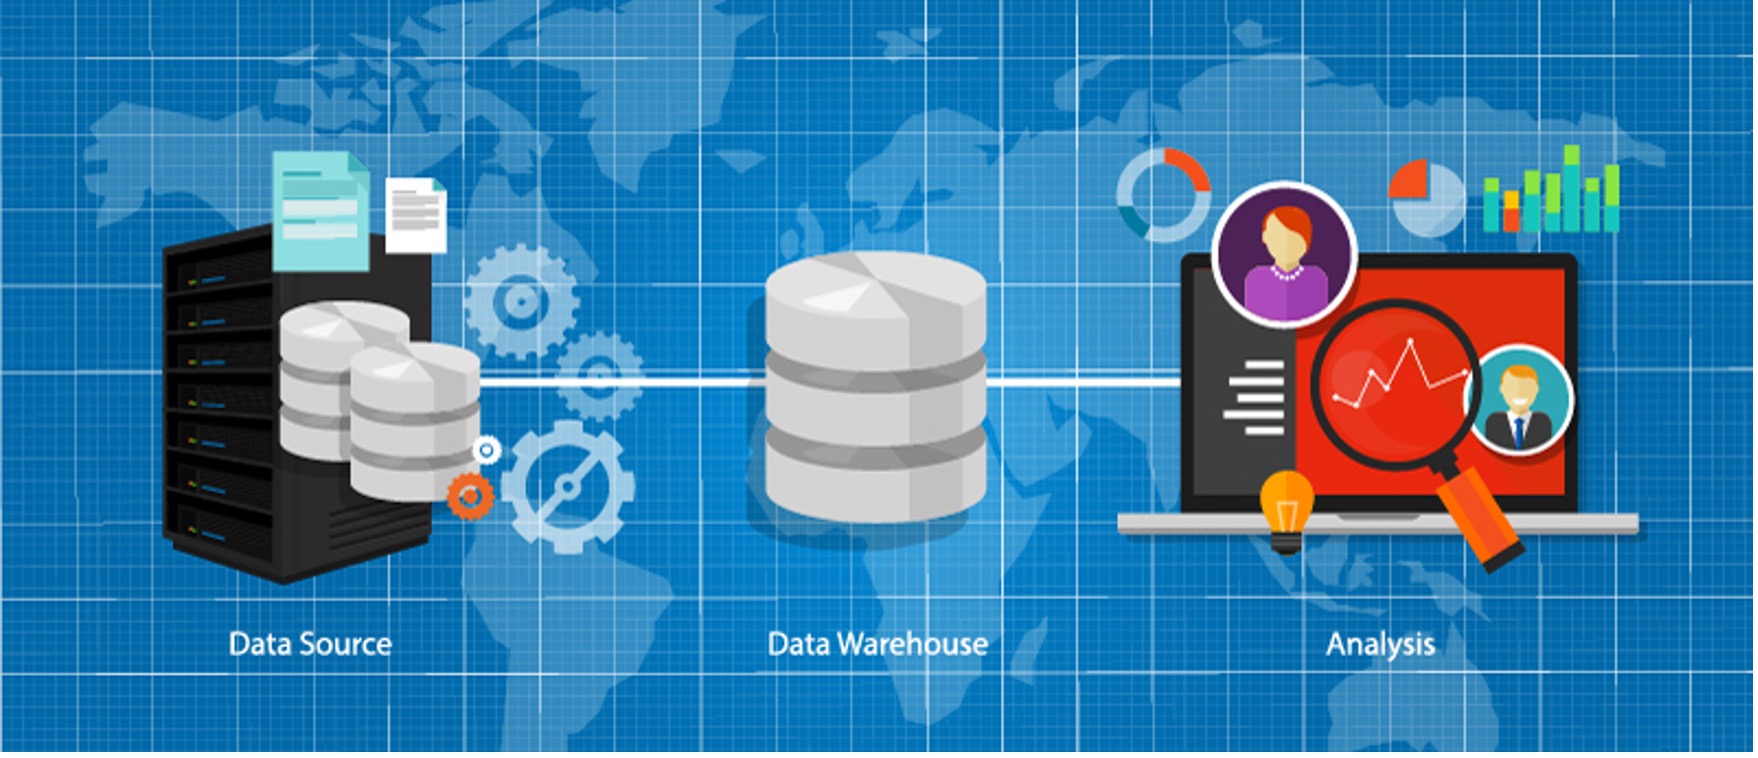 データウェアハウスは、データレイクなどのデータソースで集めたデータを分析用に加工する